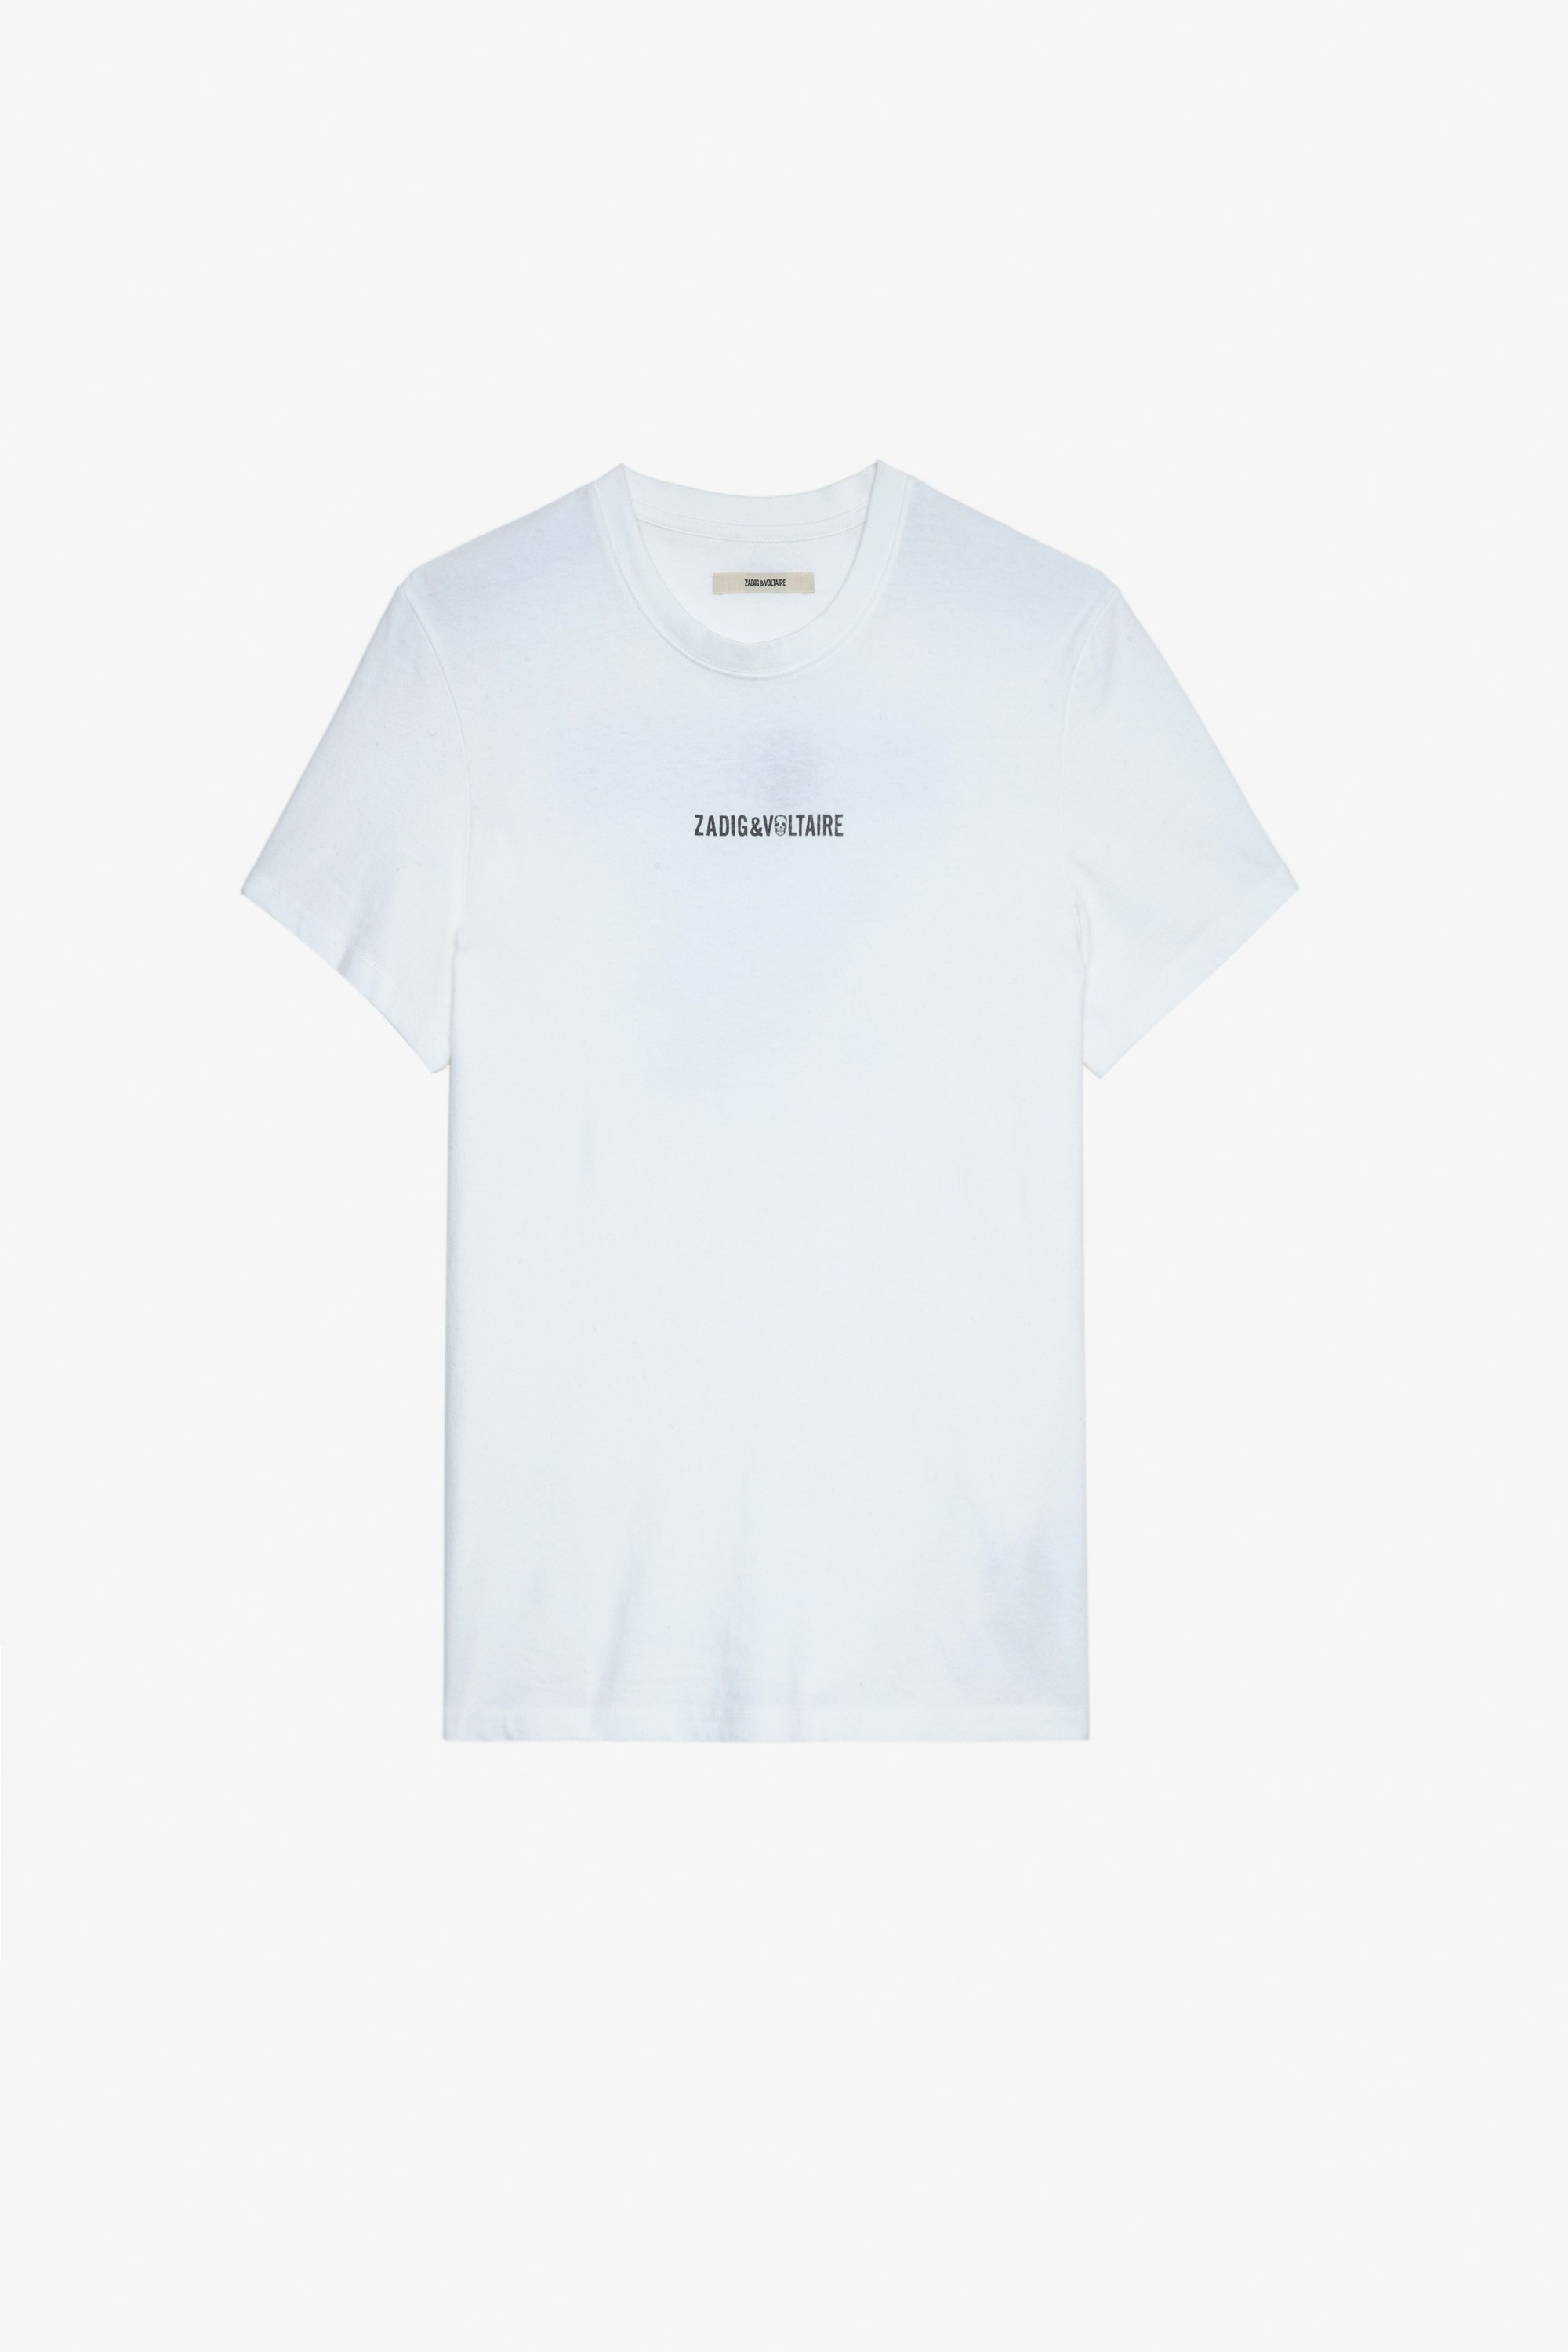 T-shirt Ted T-shirt en coton écru orné d'une signature ZV devant et du message "Hédoniste" au dos Homme